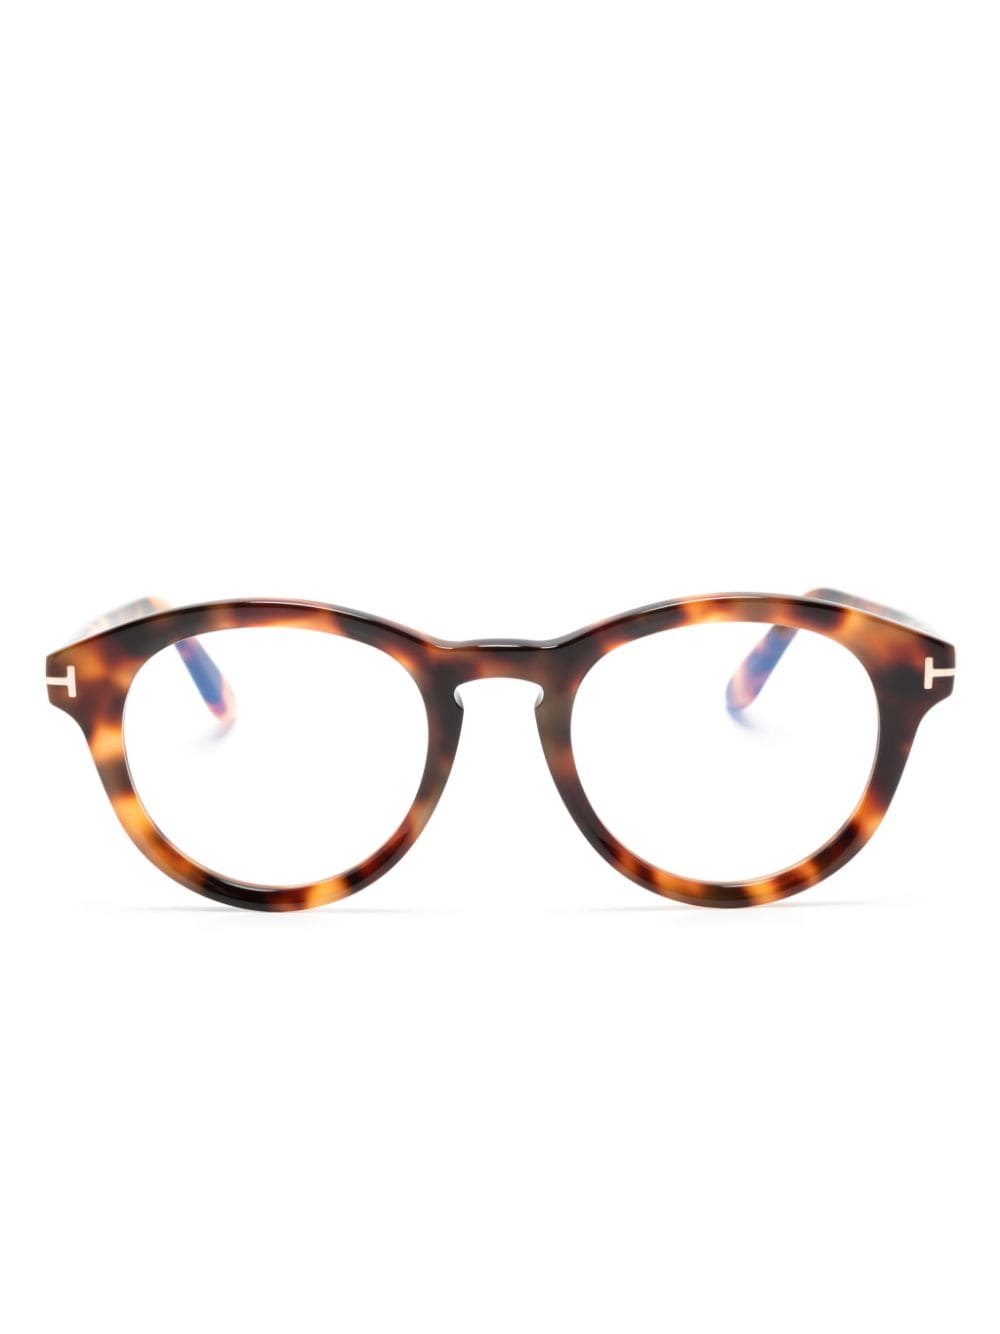 TOM FORD Eyewear tortoiseshell round-frame glasses - Braun